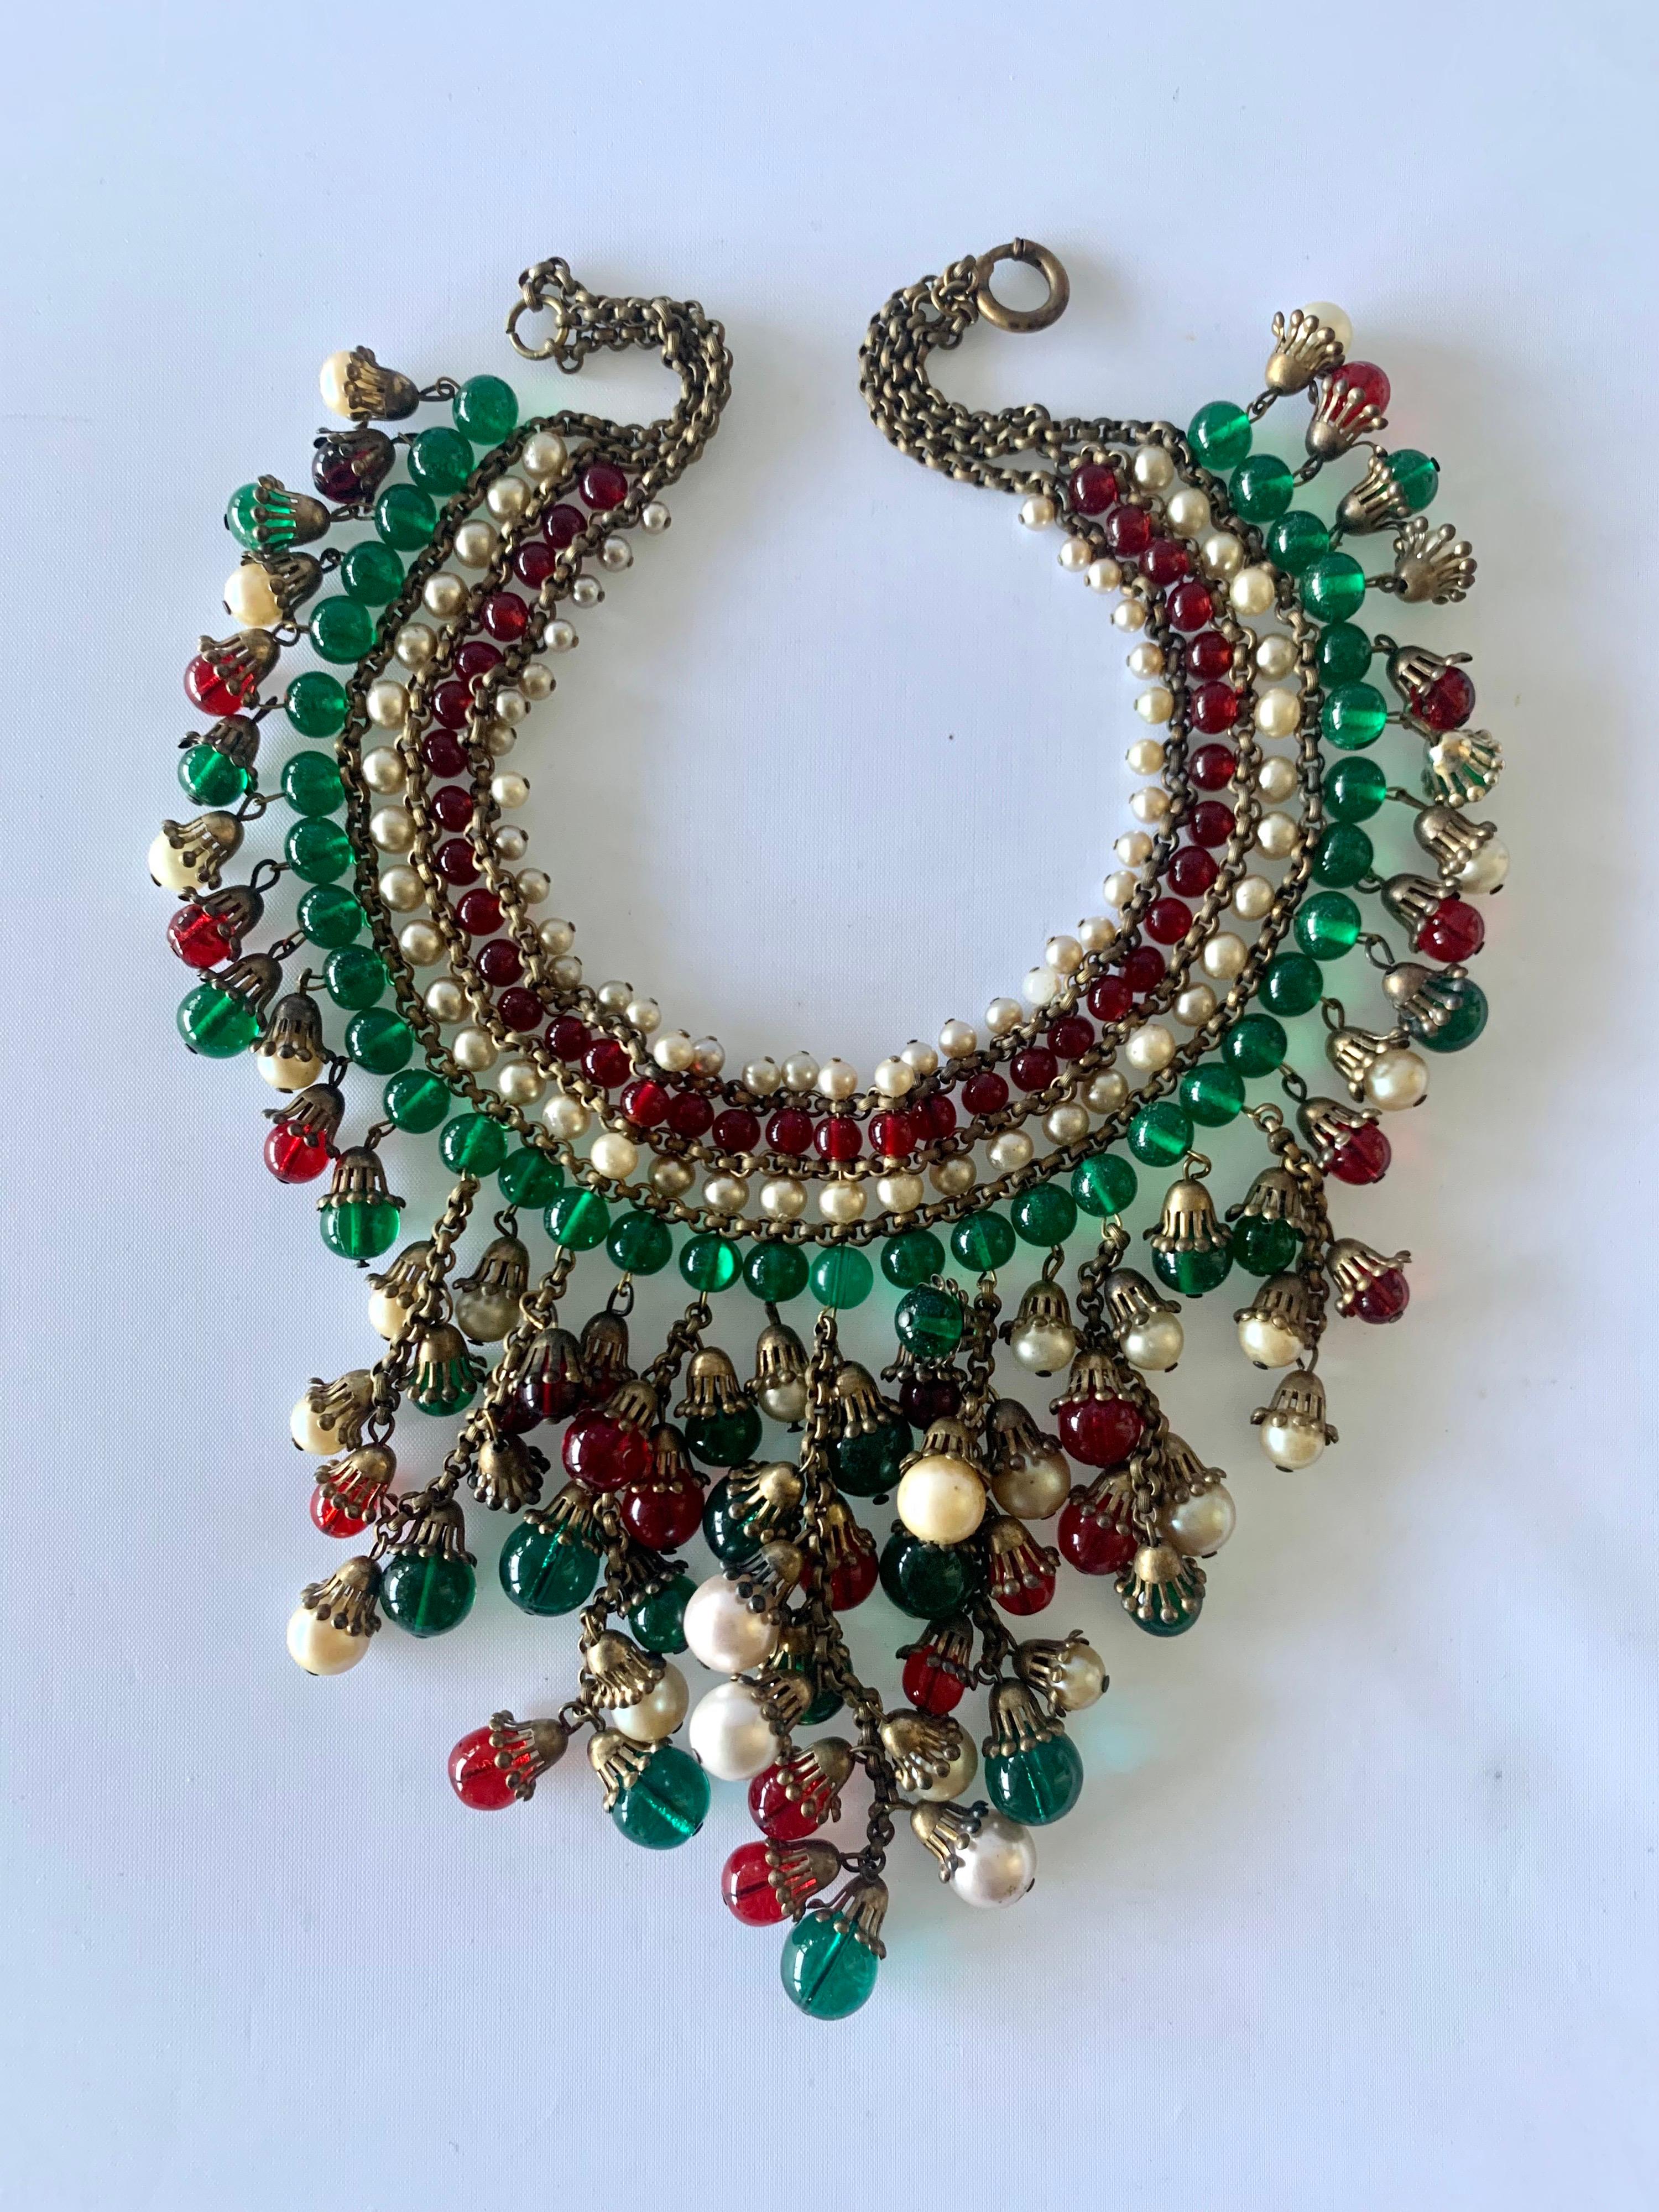 Important collier à franges en métal de Coco Chanel - composé de centaines de perles de verre vertes et rouges de la Maison Gripoix et de perles de couleur crème de la Maison Rousselet. Les perles, les perles et les éléments métalliques ont été